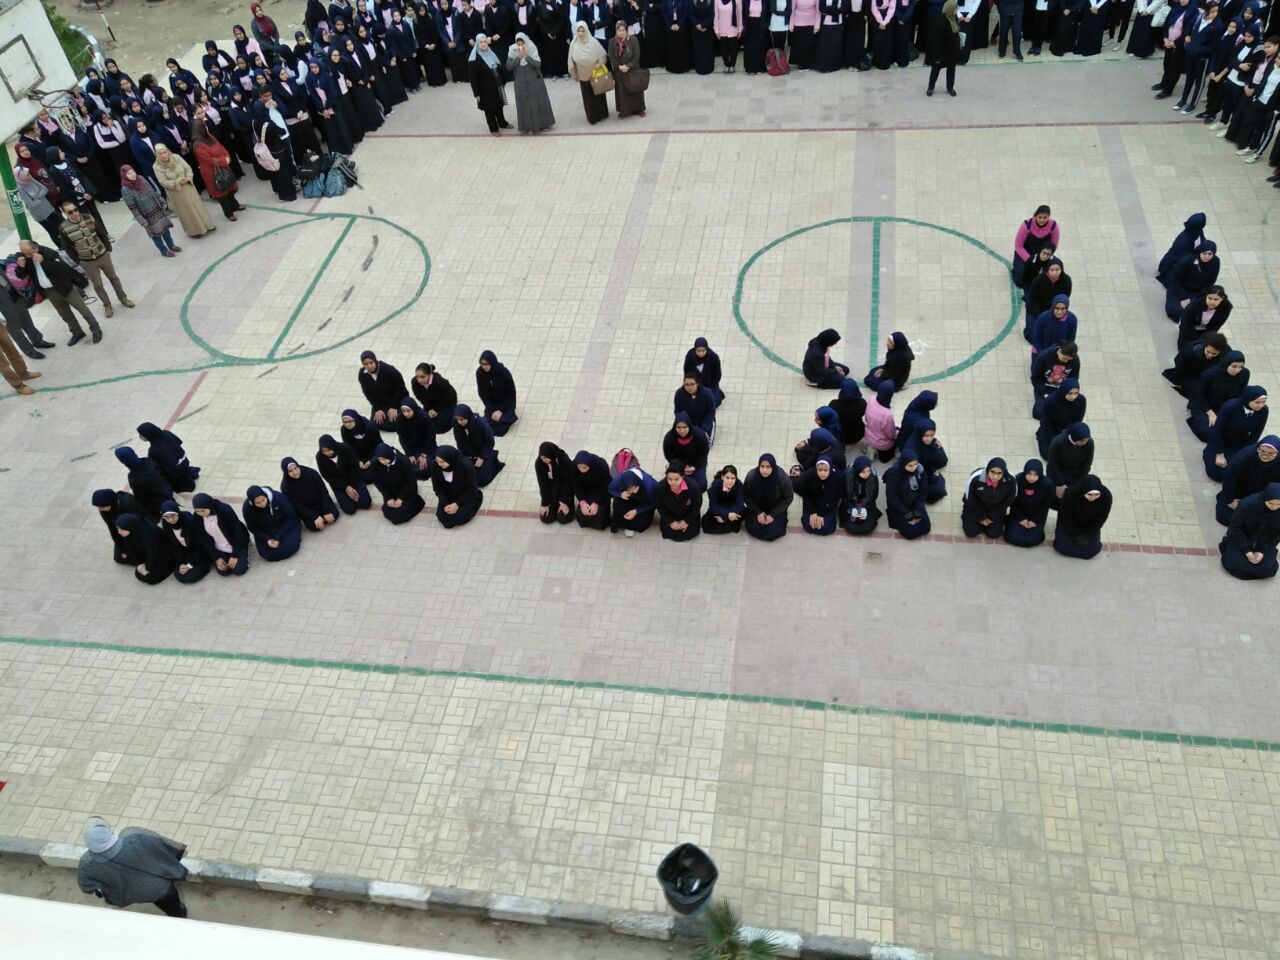 صور طالبات مدرسة العجمى الثانوية بنات يكتبن كلمة القدس بأجسادهن (2)